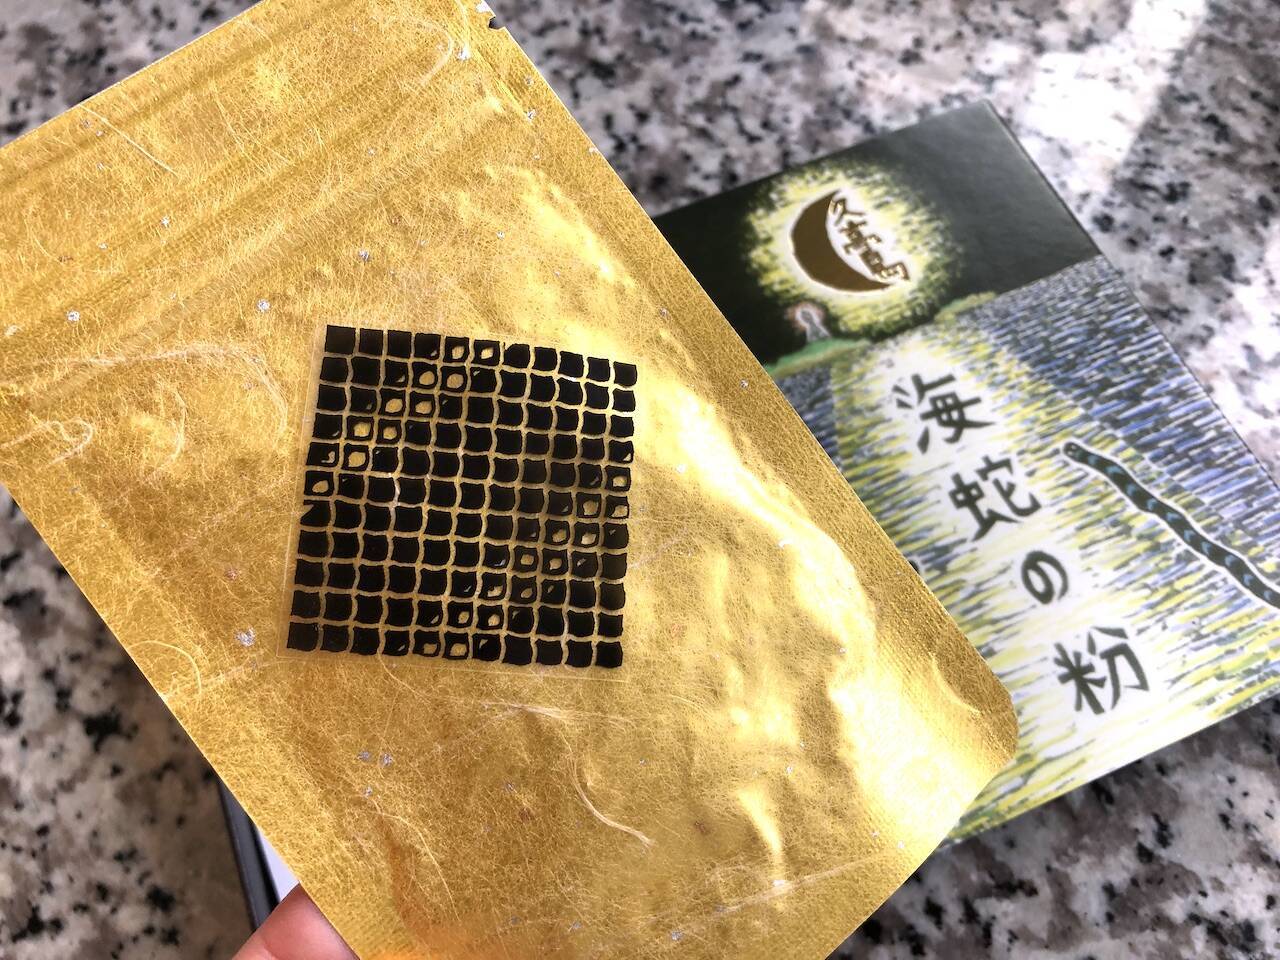 【沖縄のレアなお土産に】久高島イラブー「海蛇の粉」を買って食べてみた